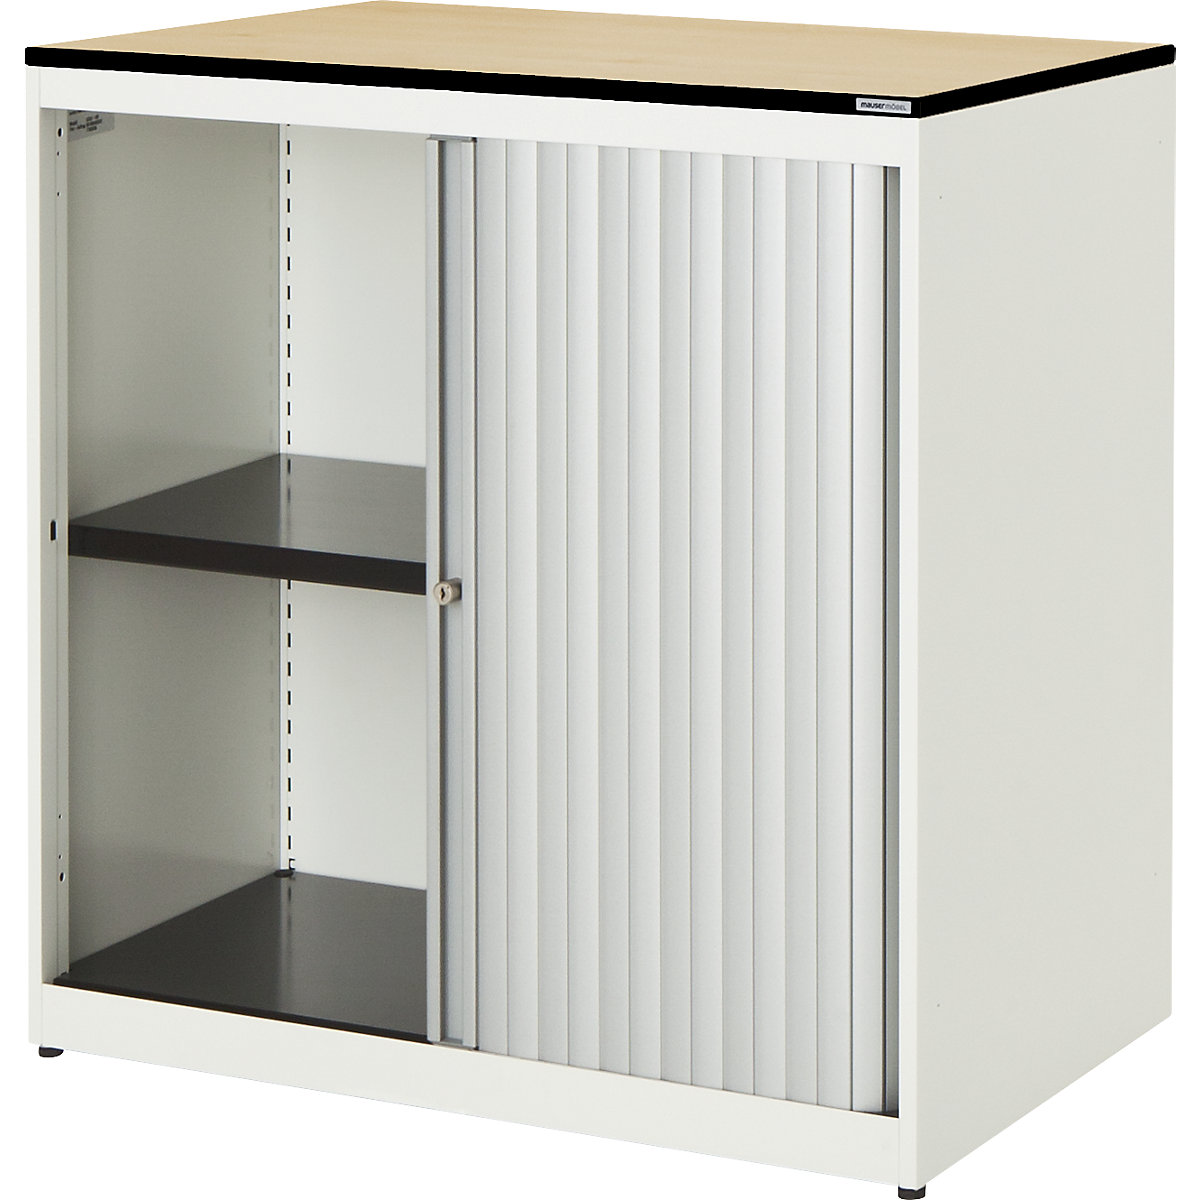 Horizontal roller shutter cupboard – mauser